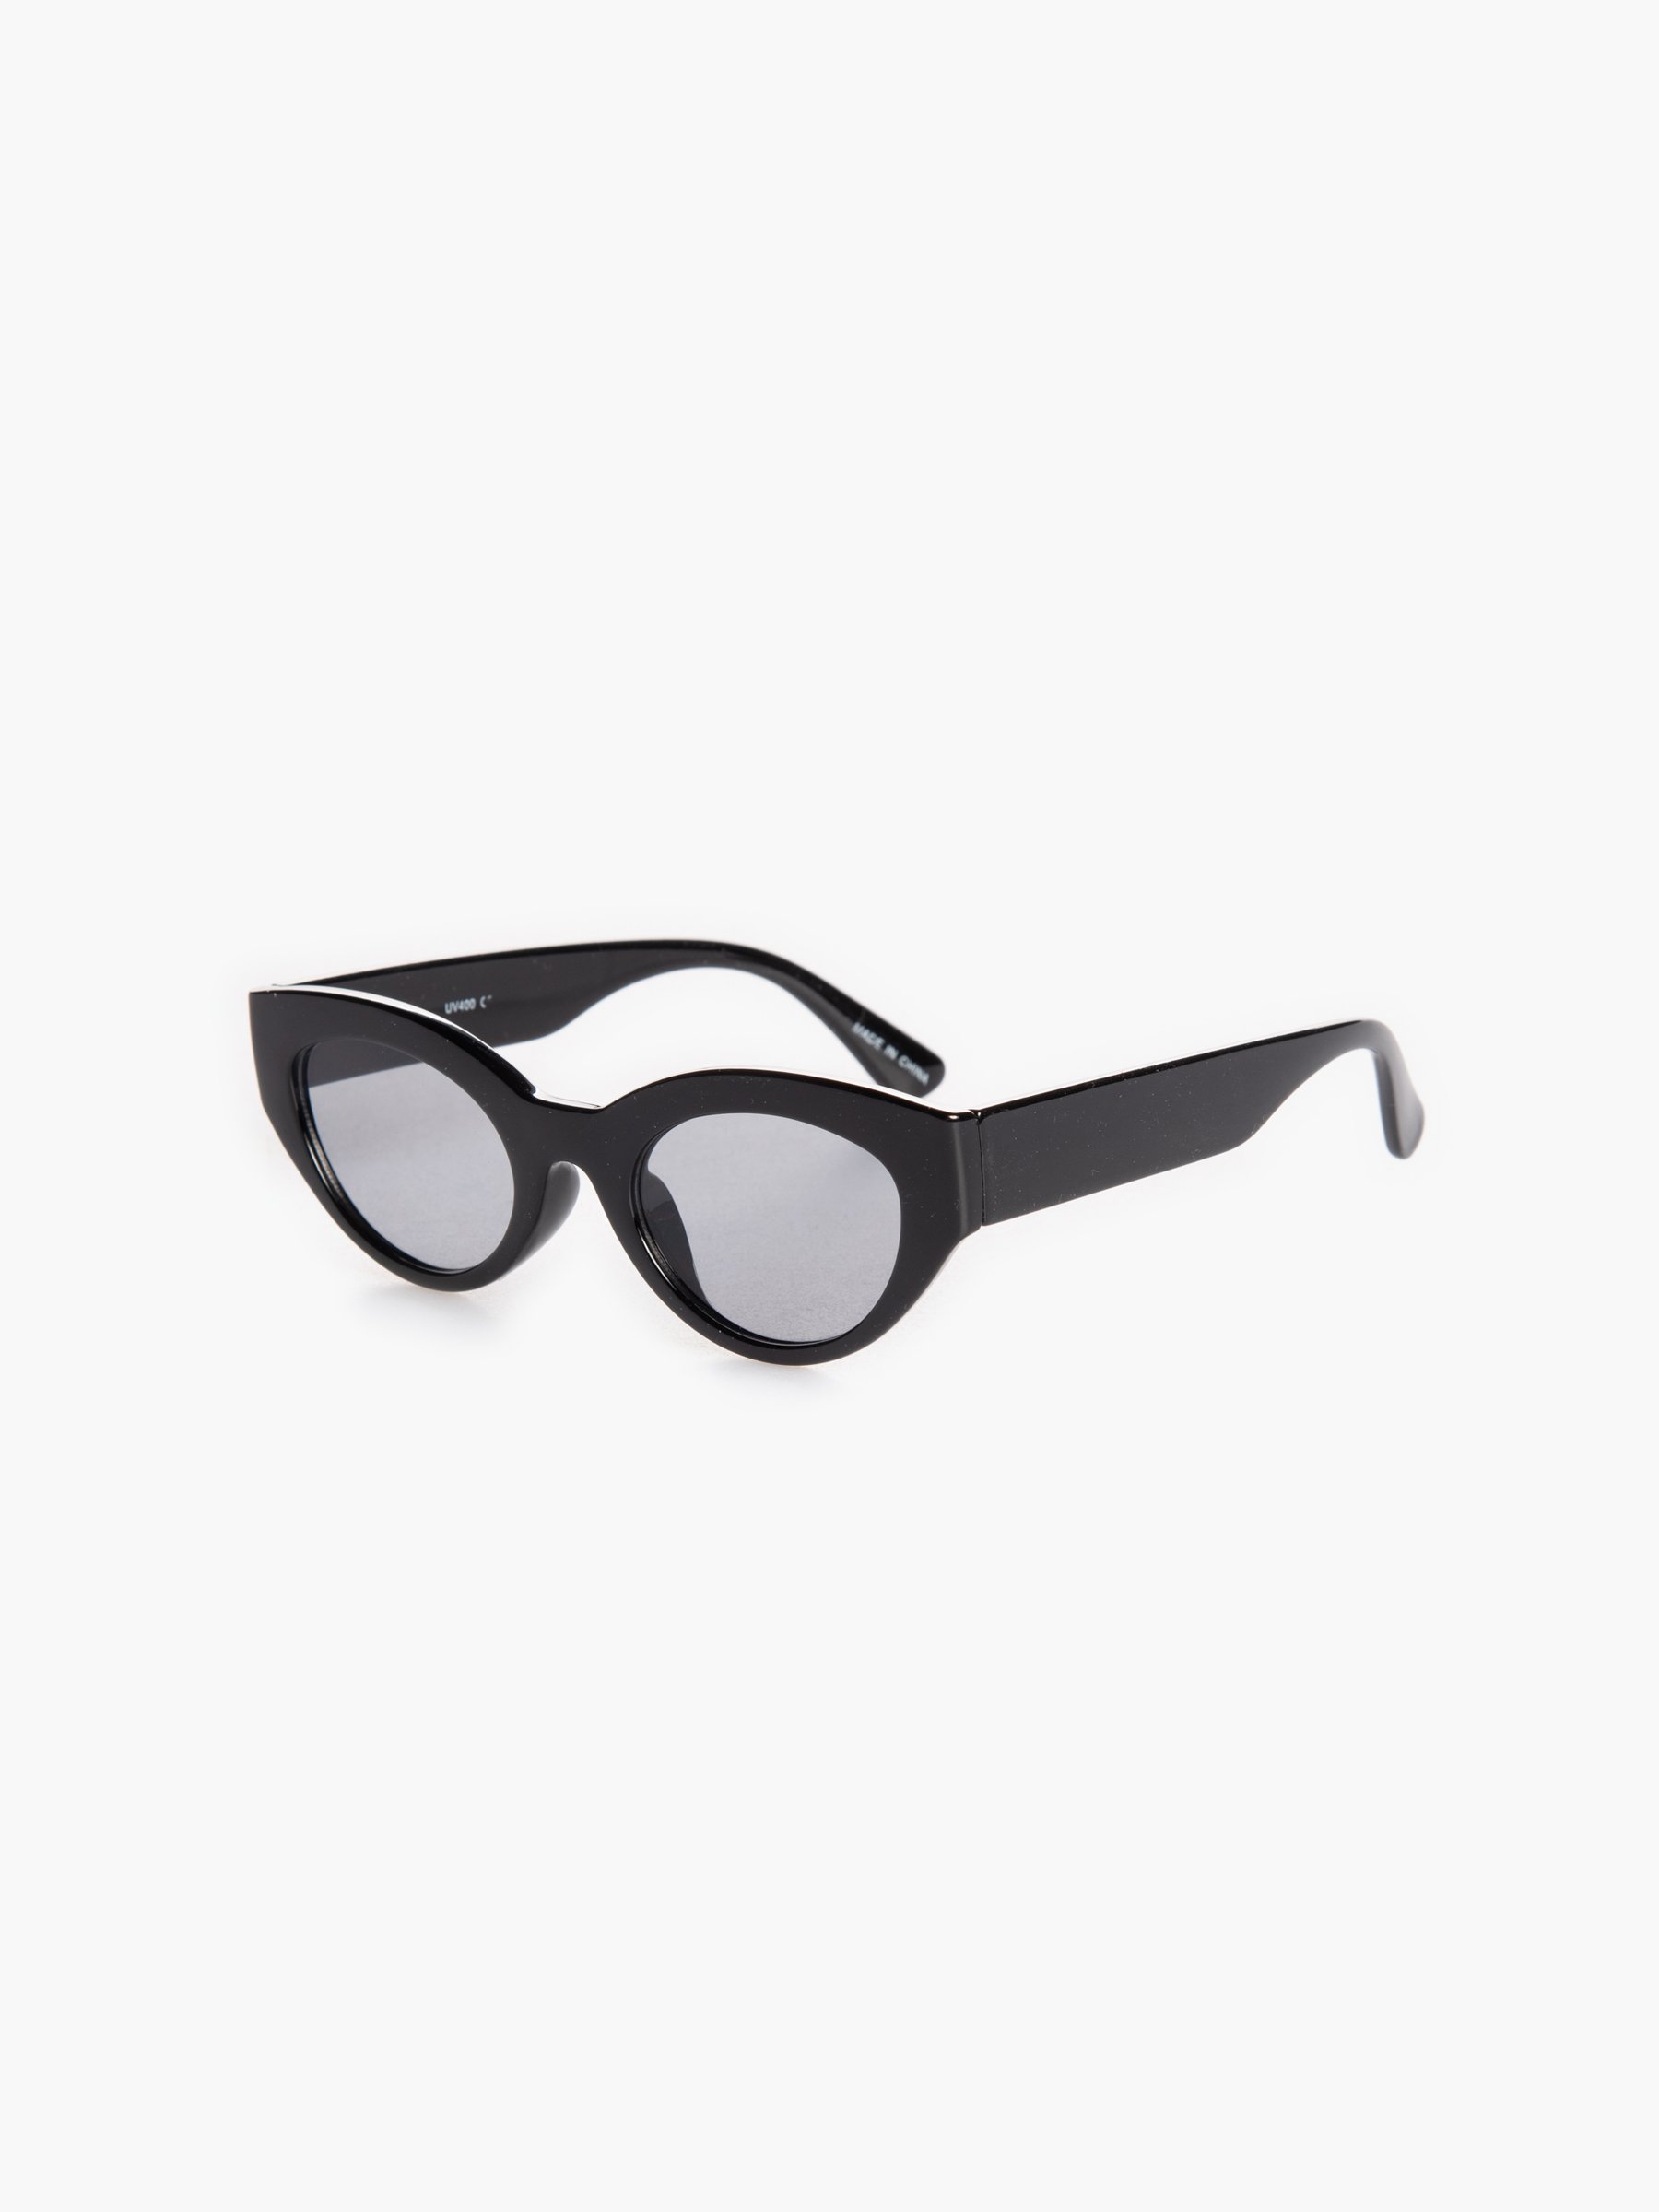 LVIOE Óculos de sol com olhos de gato para mulheres, óculos vintage  polarizados para dirigir, pescar – 100% de proteção UV, A06 Armação preta/ lente espelhada polarizada verde